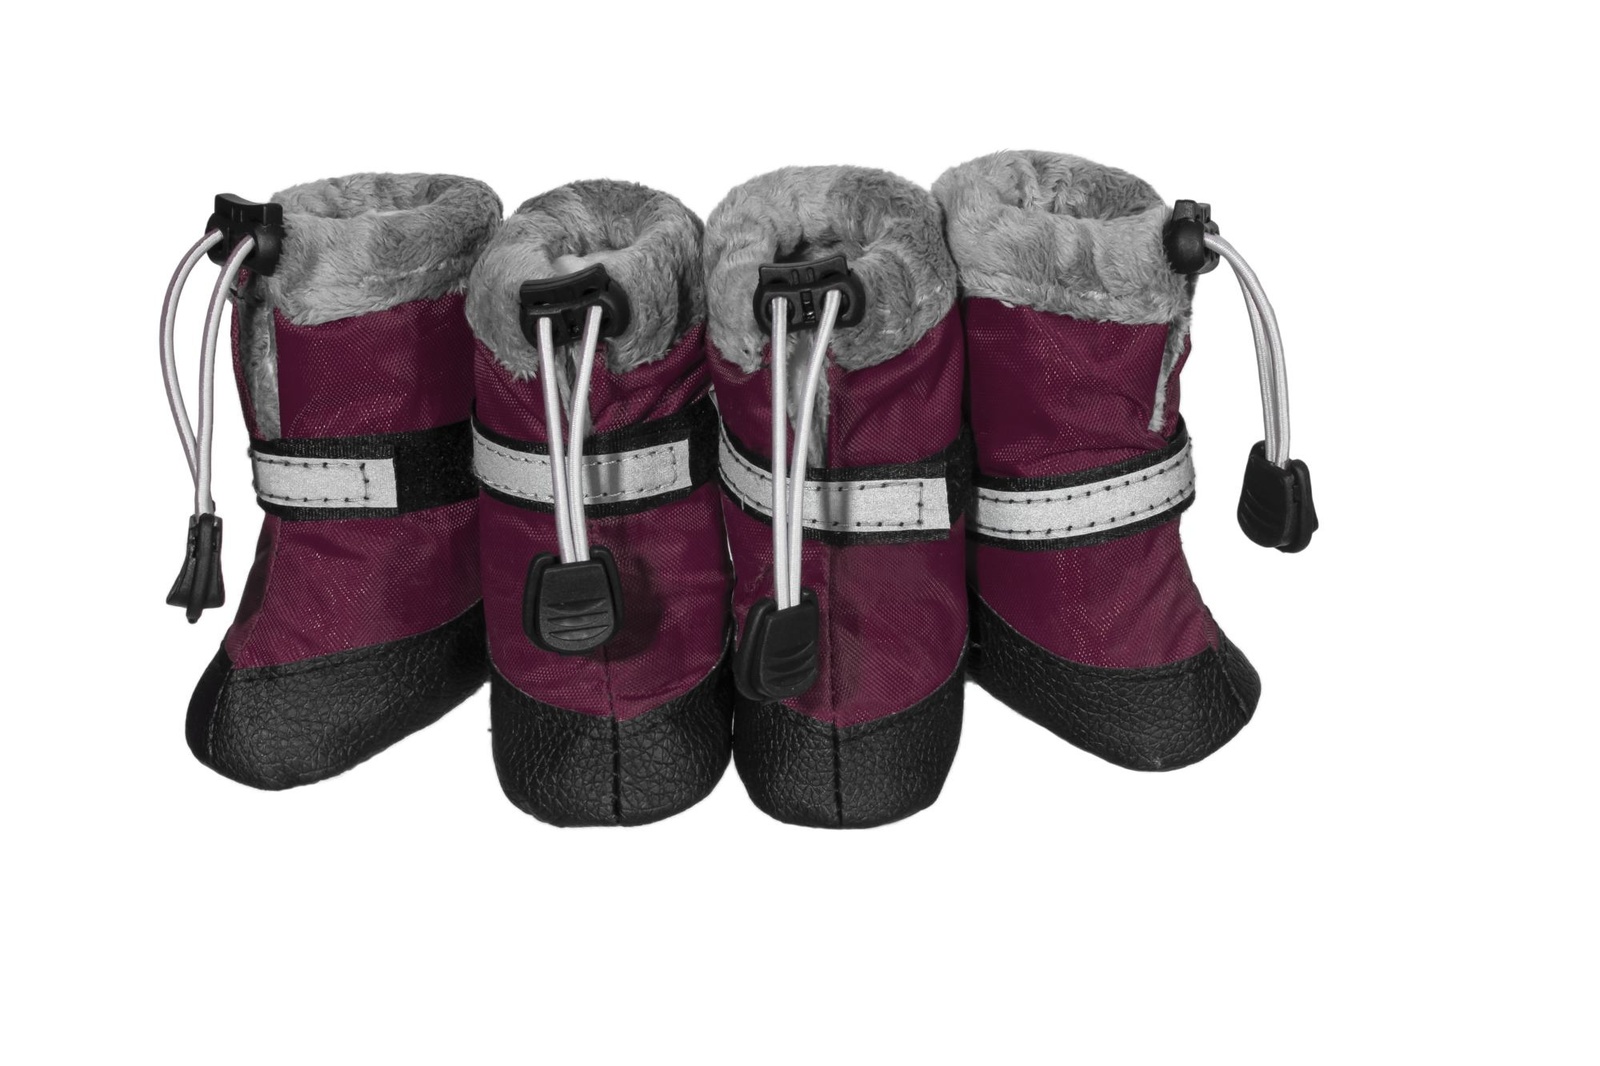 Yami-Yami одежда Yami-Yami одежда утеплённые ботинки для собак, бордовые со светоотражающей полосой (XL) yami yami одежда yami yami одежда утеплённые ботинки для собак бордовые со светоотражающей полосой xl